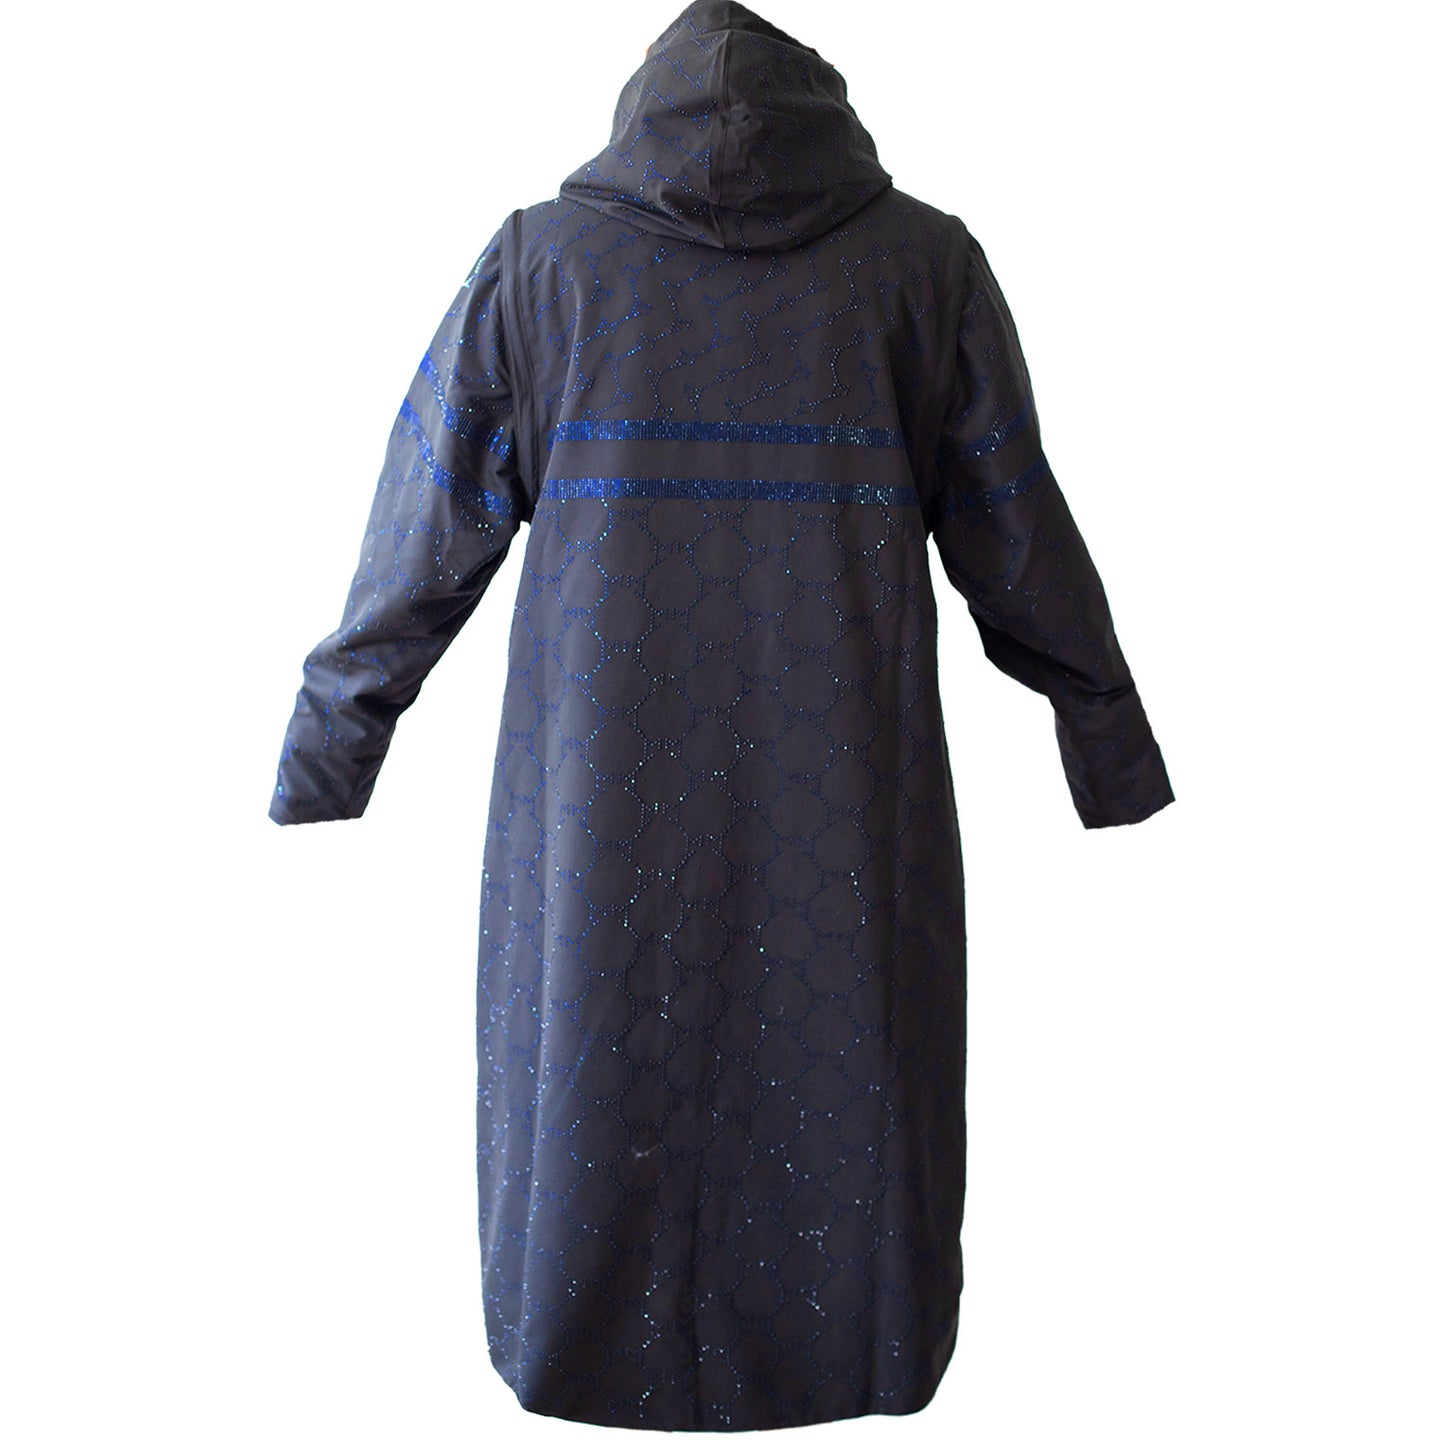 SALE Swarovski blue raincoat/vest